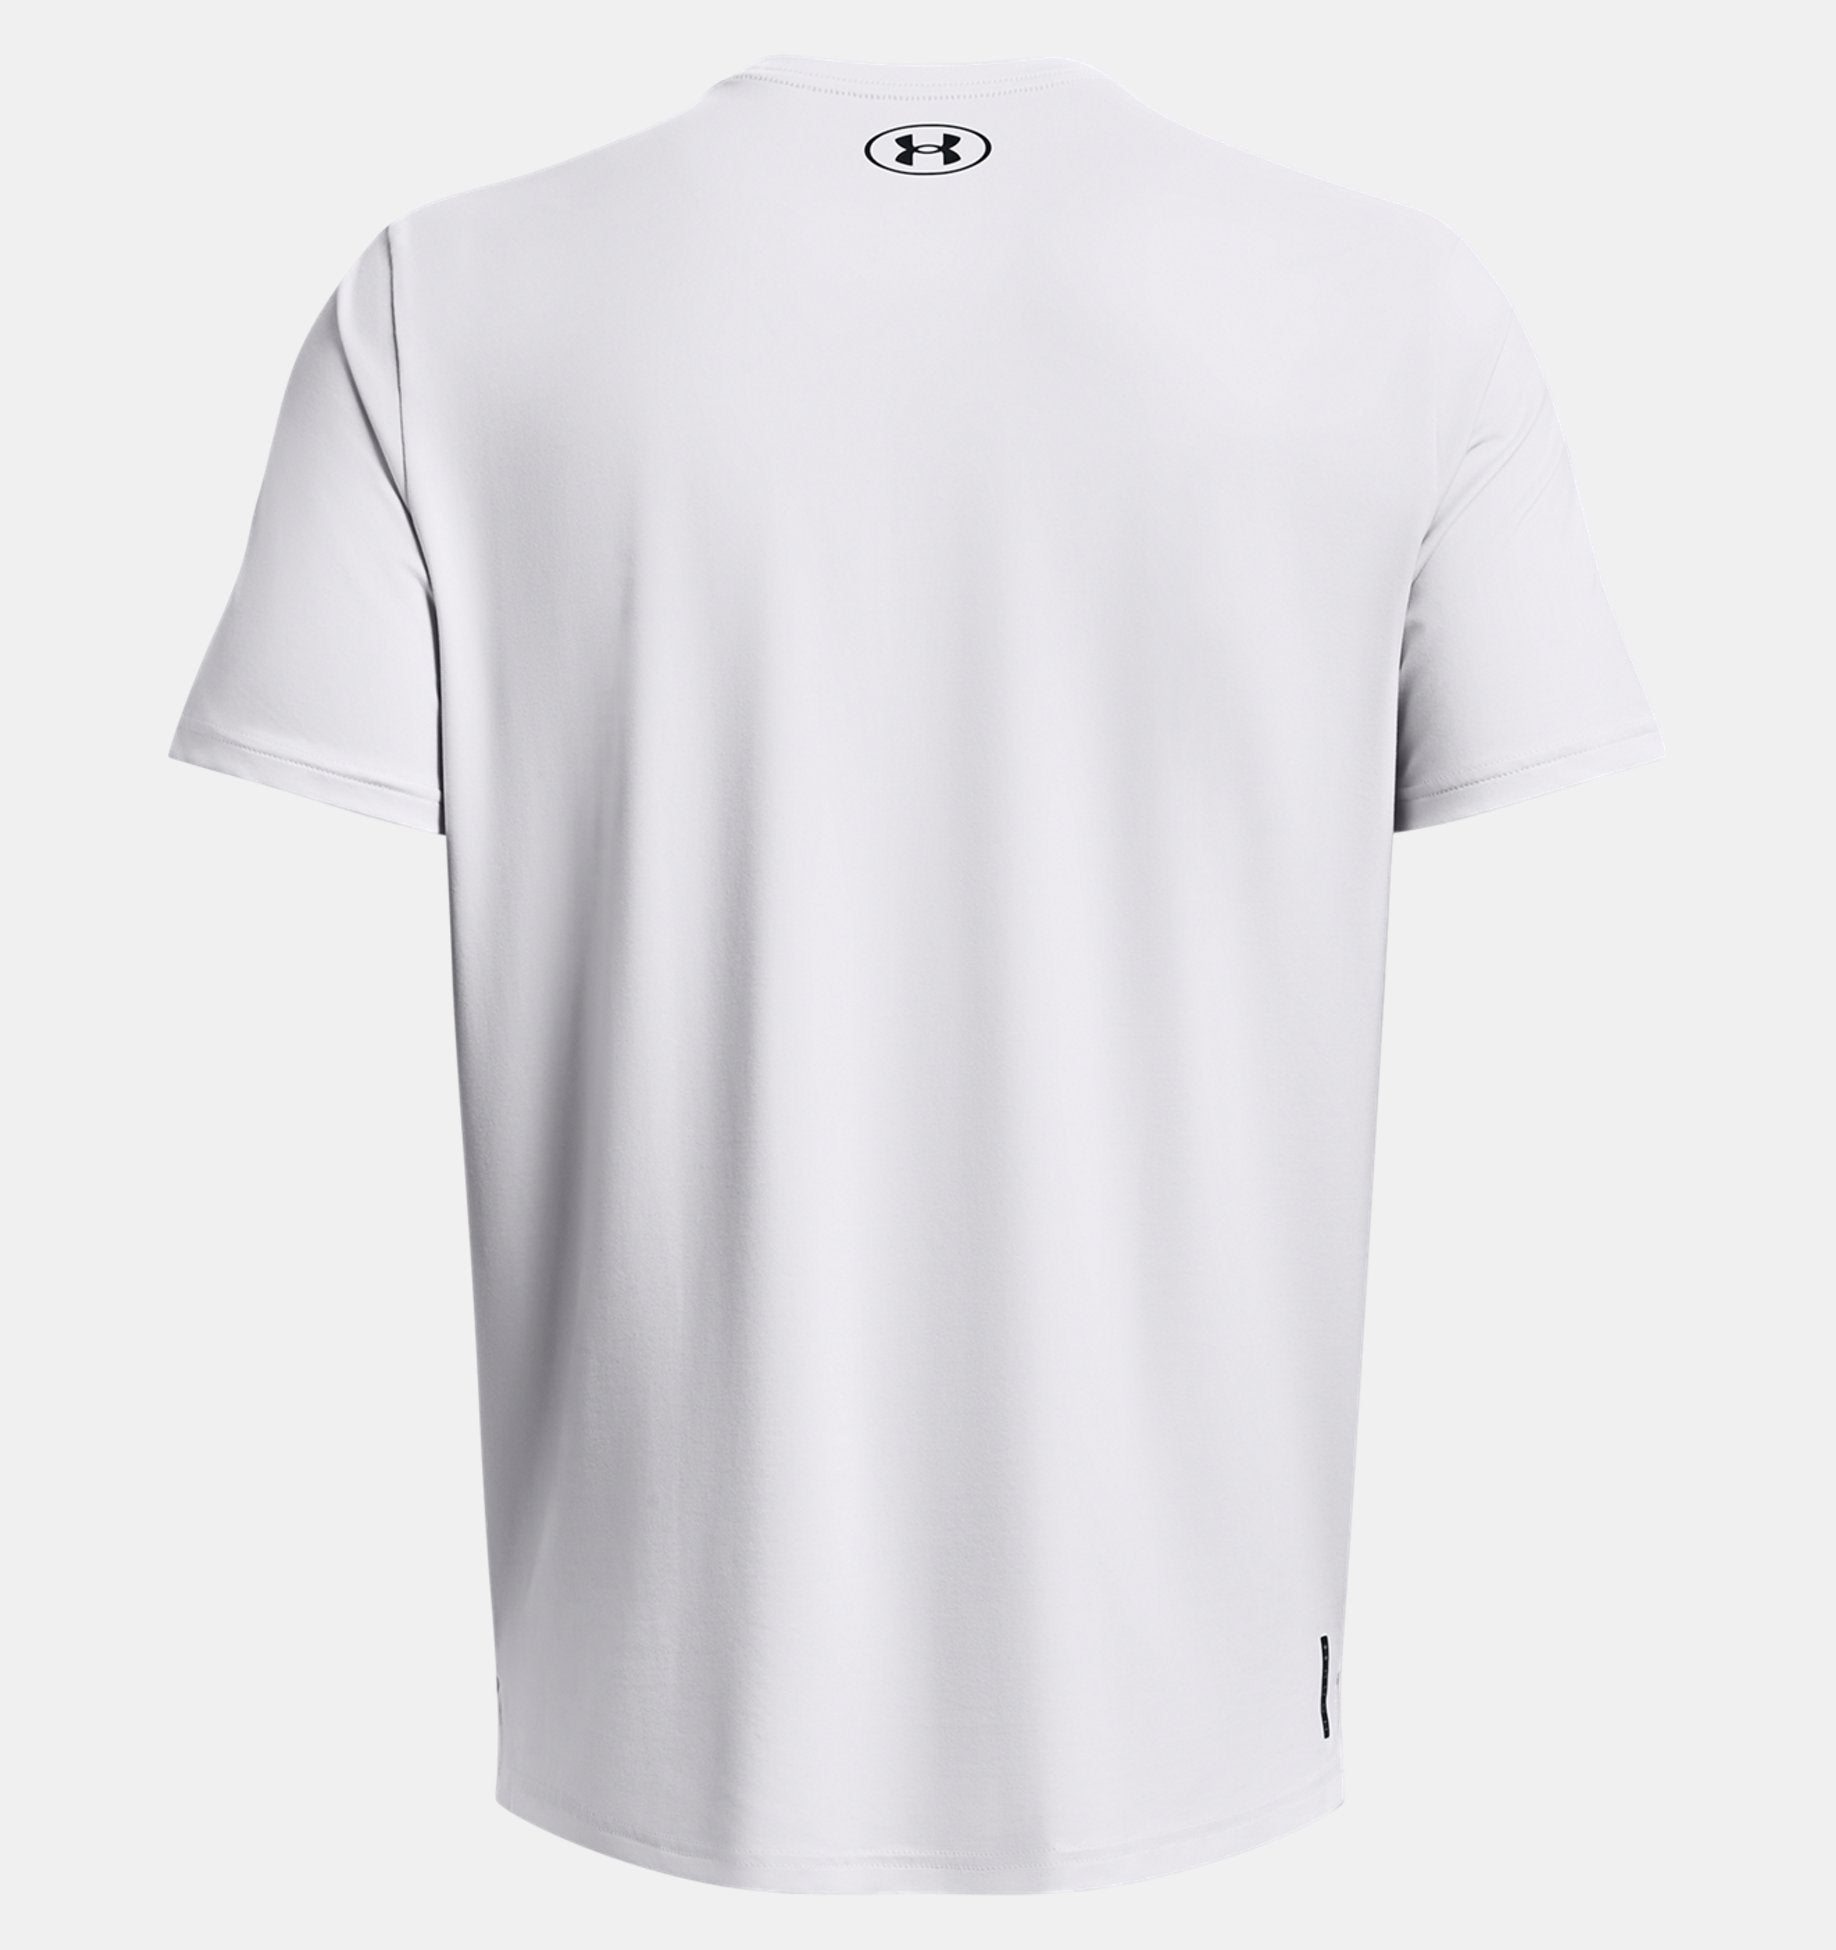 UA Rush Energy short-sleeve t-shirt for men – Soccer Sport Fitness